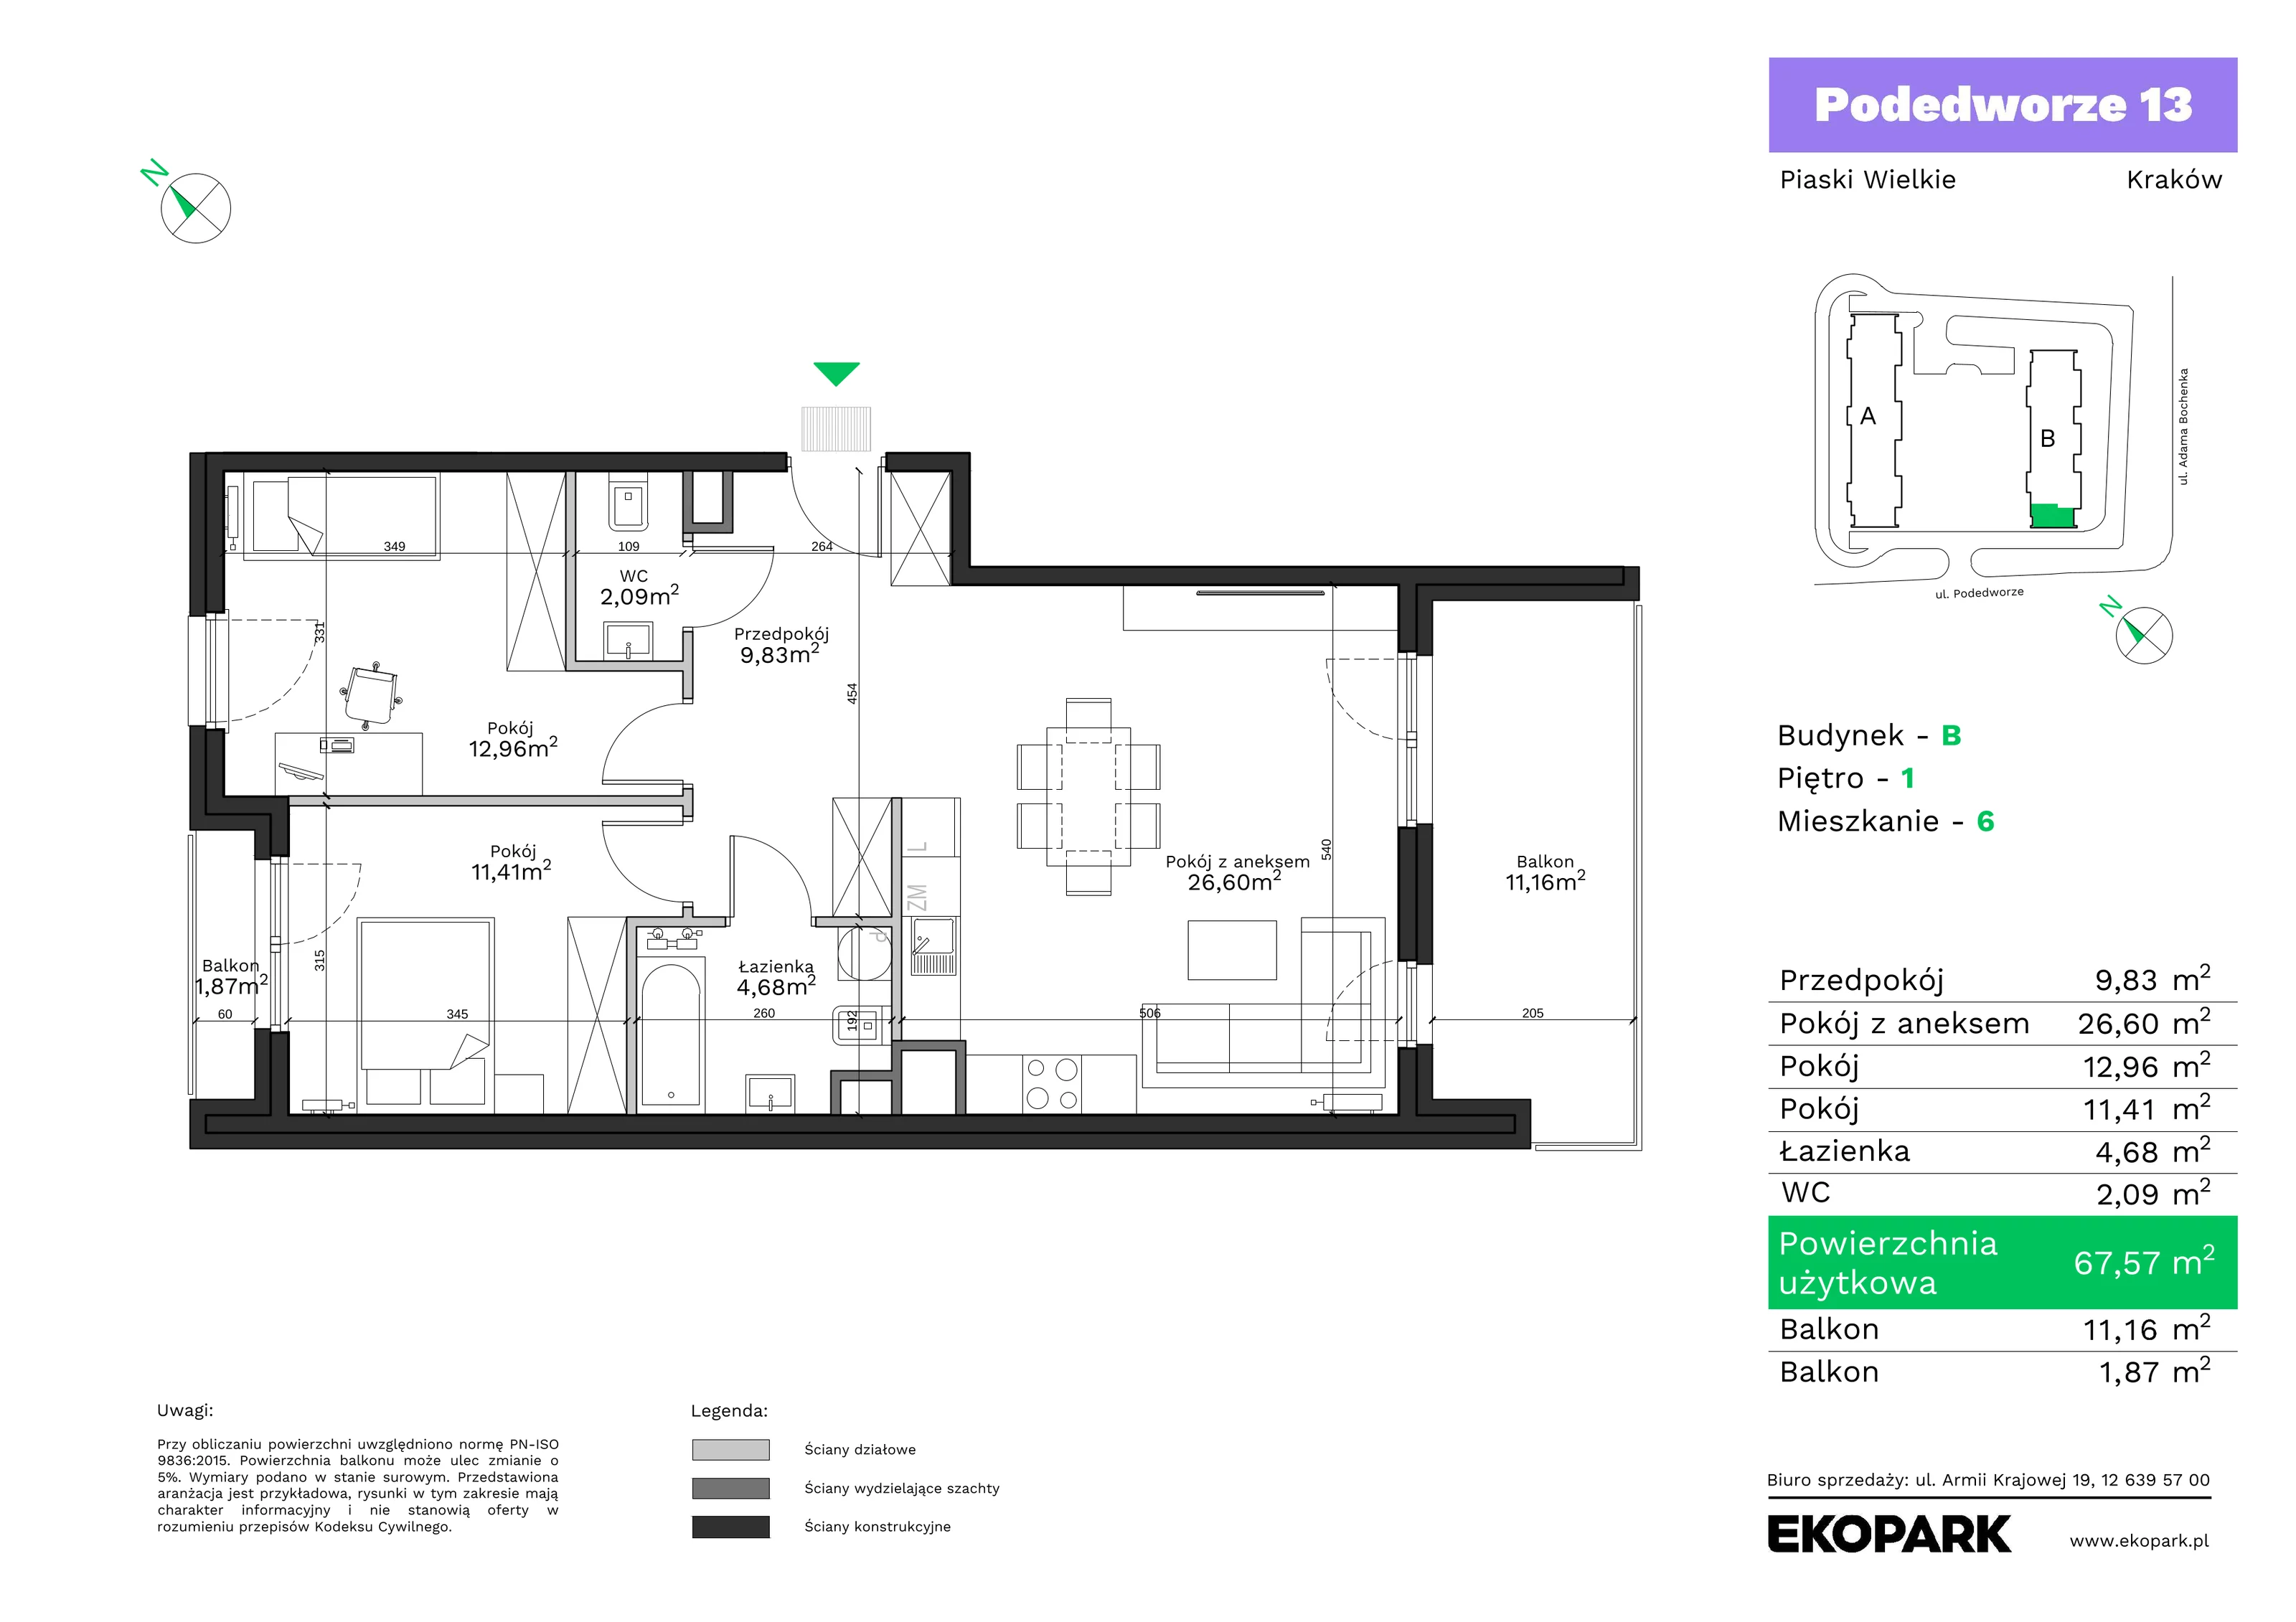 Mieszkanie 67,57 m², piętro 1, oferta nr B6, Podedworze 13, Kraków, Podgórze Duchackie, Piaski Wielkie, ul. Podedworze 13